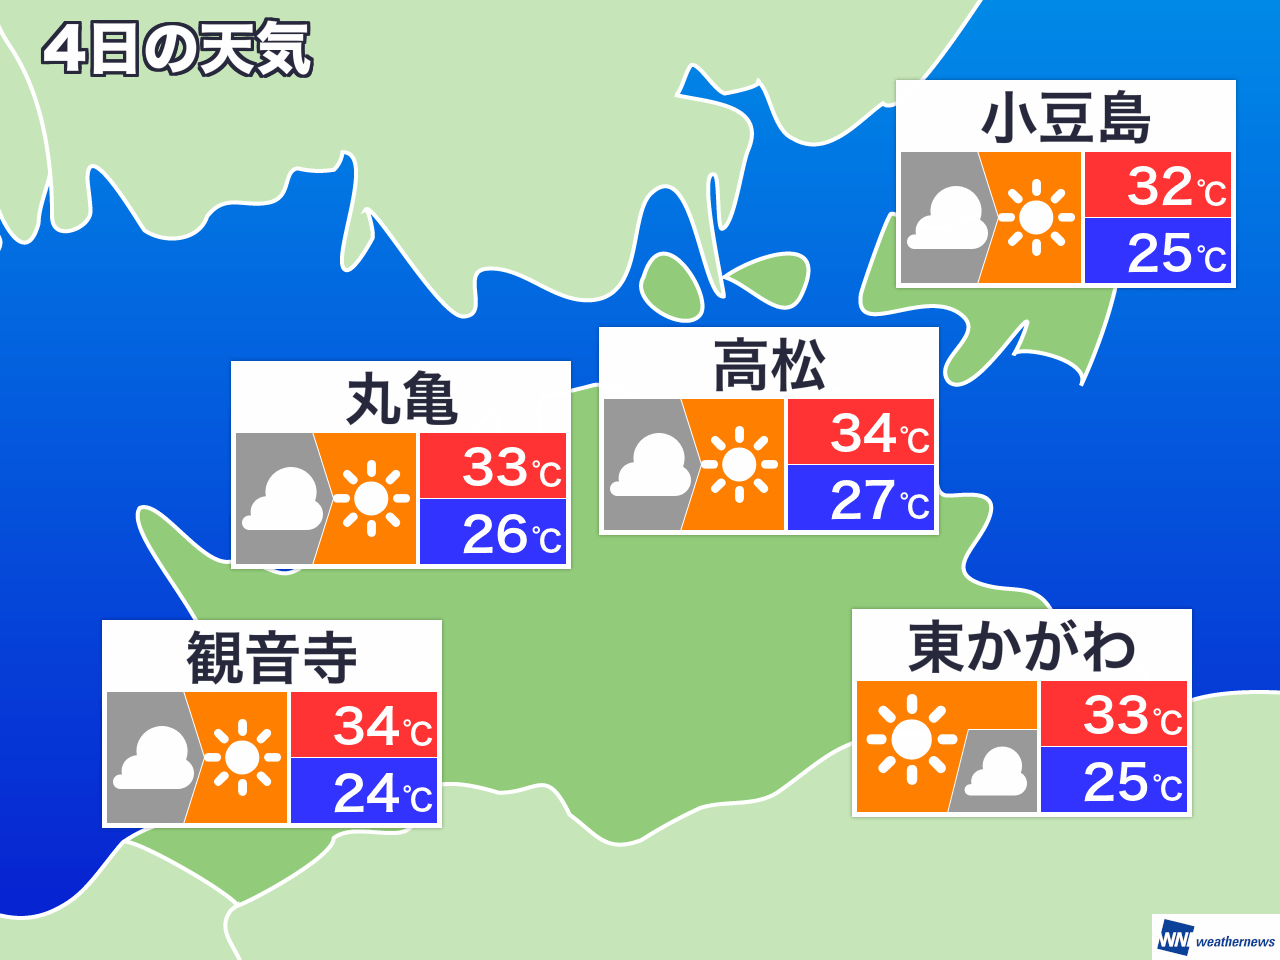 4月3日 土 香川県の明日の天気 ウェザーニュース